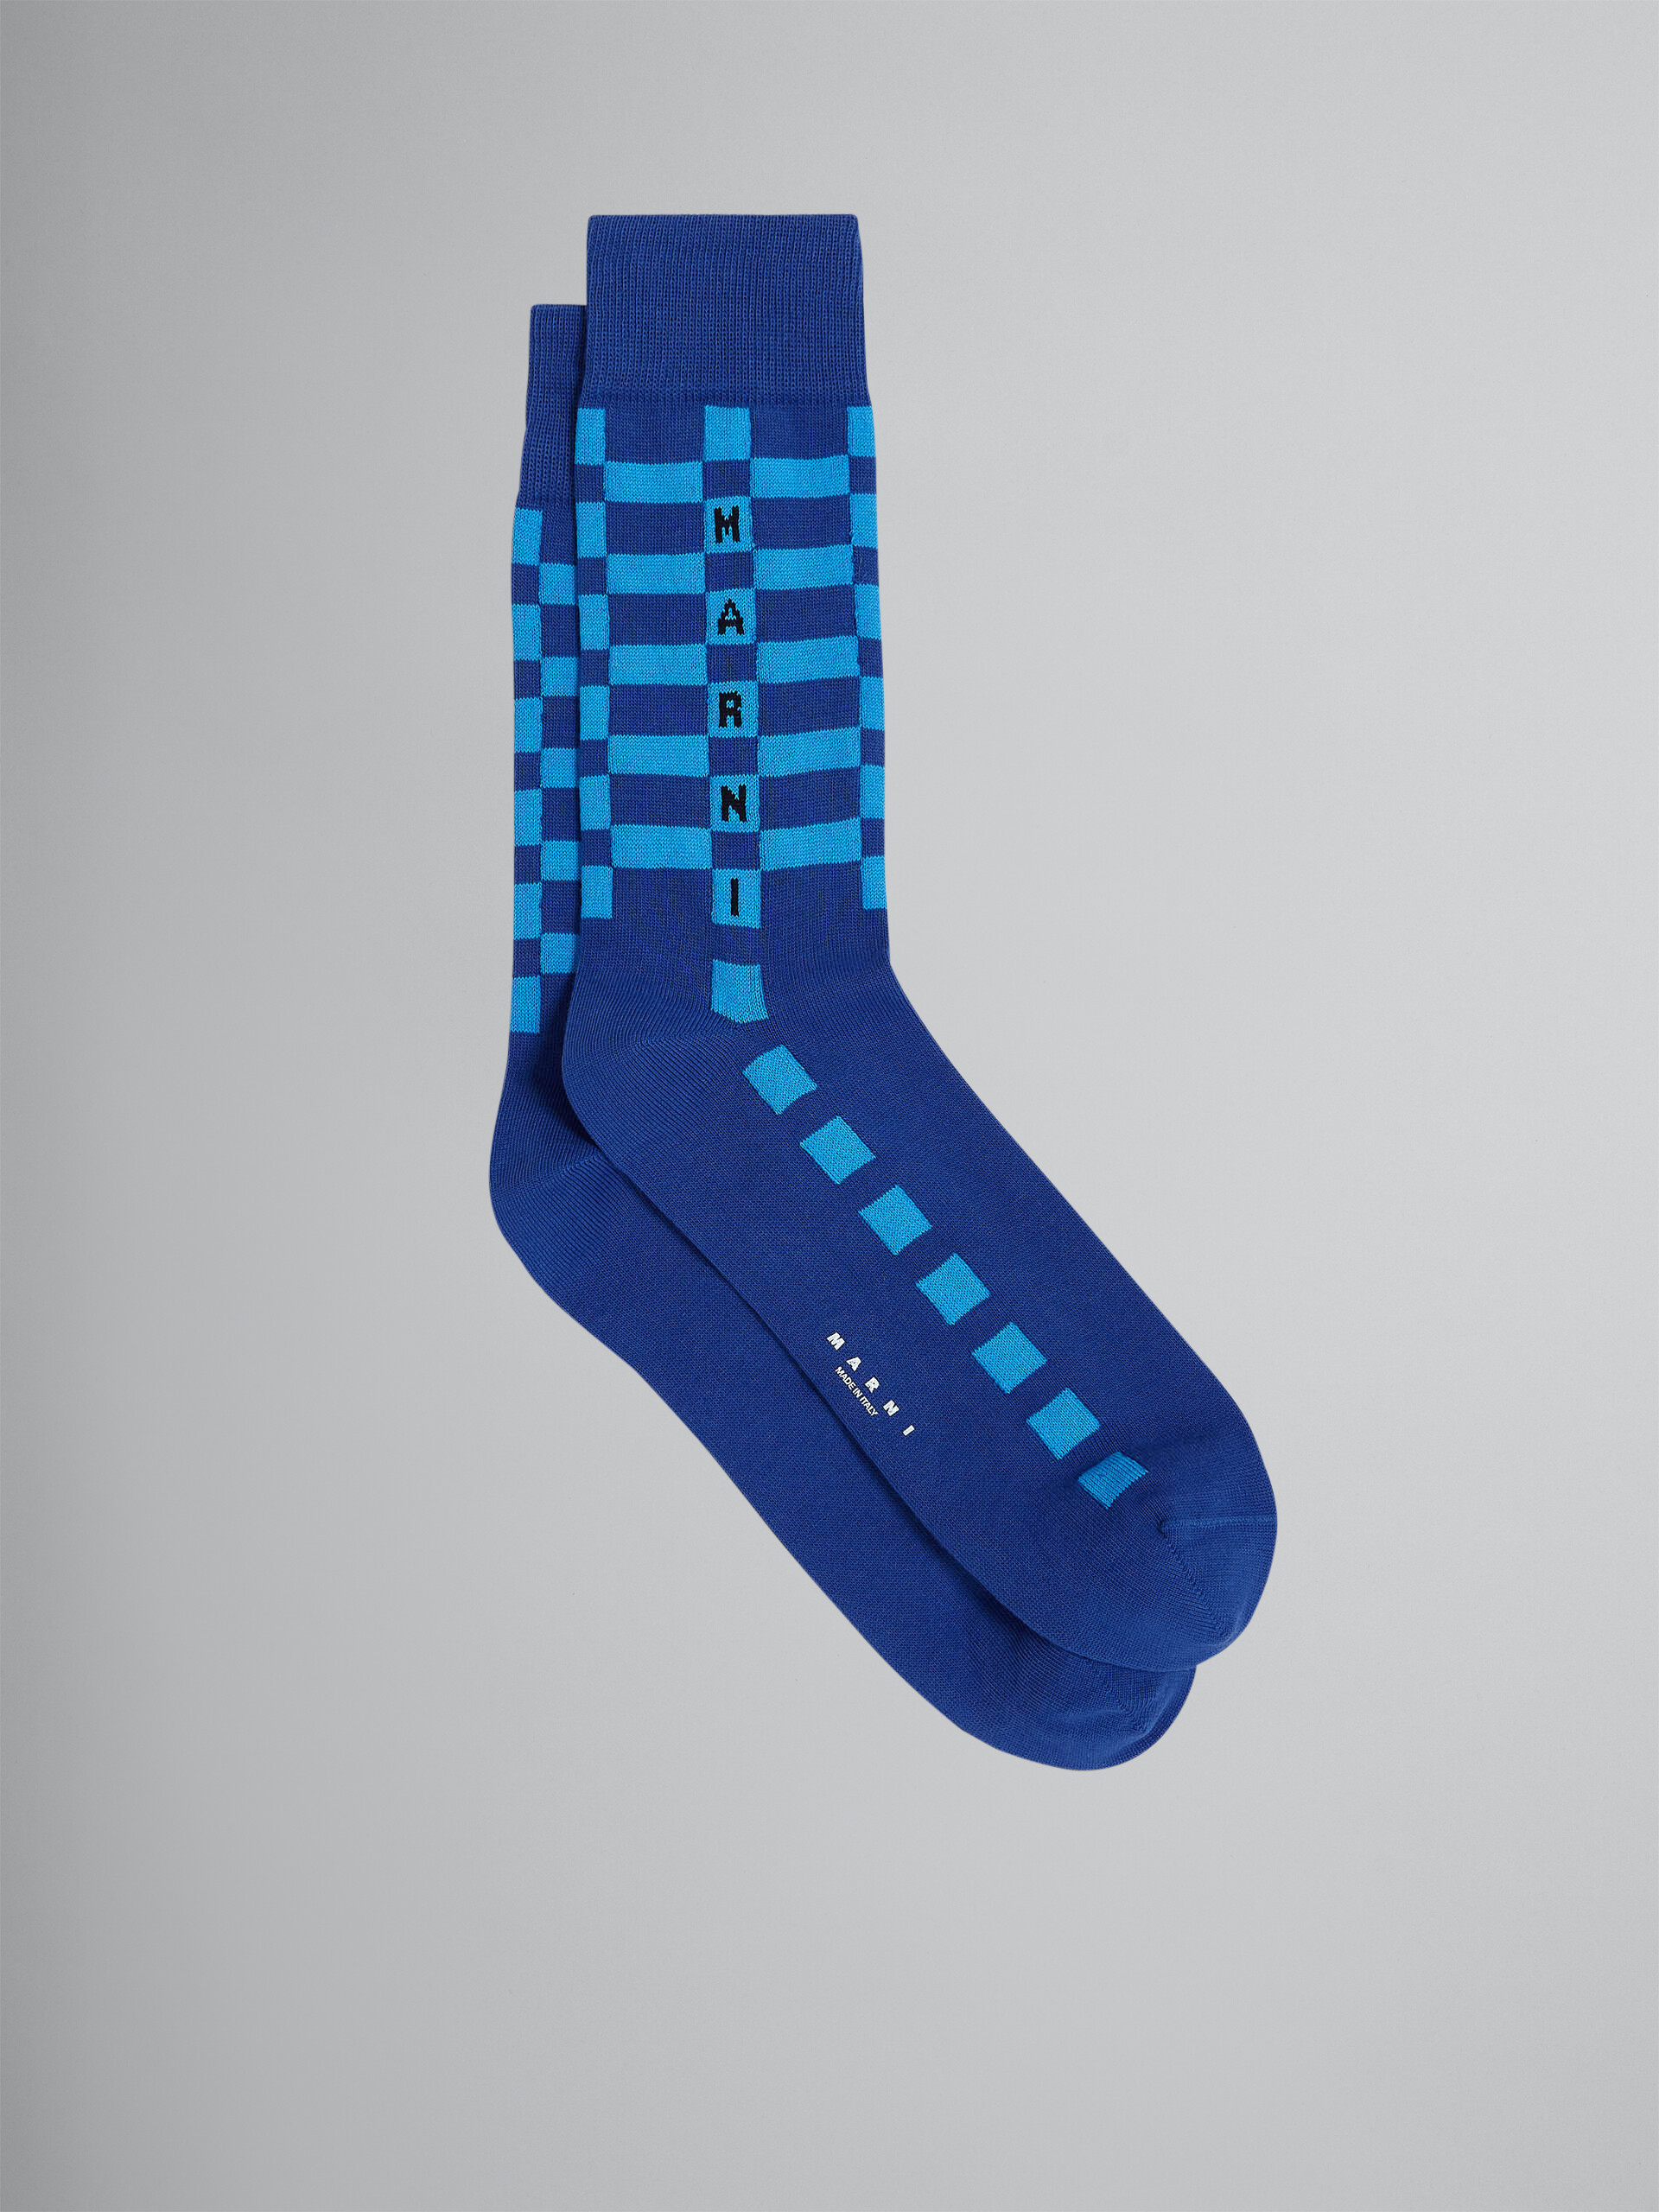 블루 코튼 및 나일론 양말 - Socks - Image 1